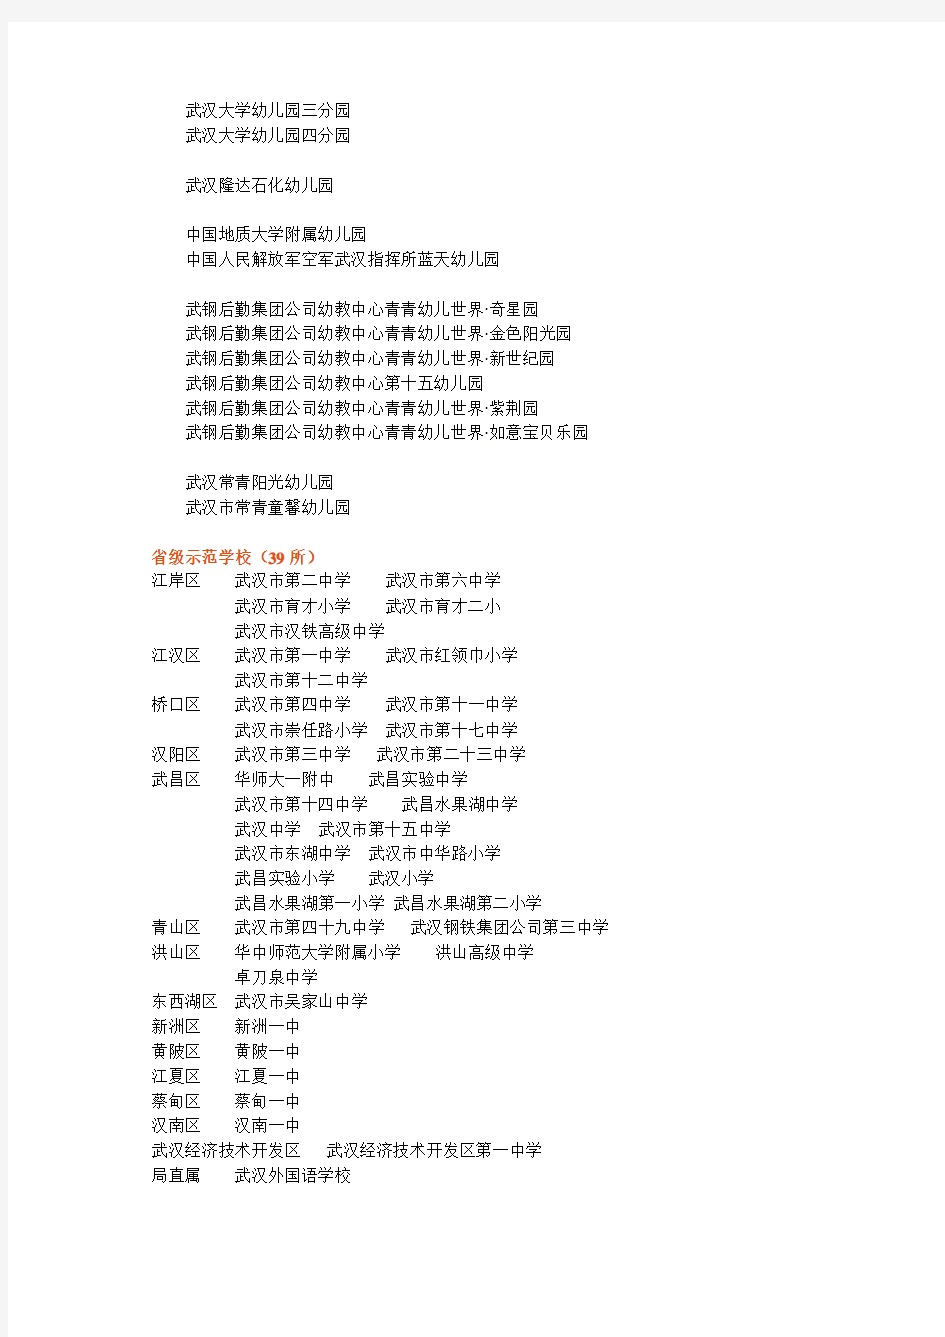 武汉市市级示范性幼儿园名单